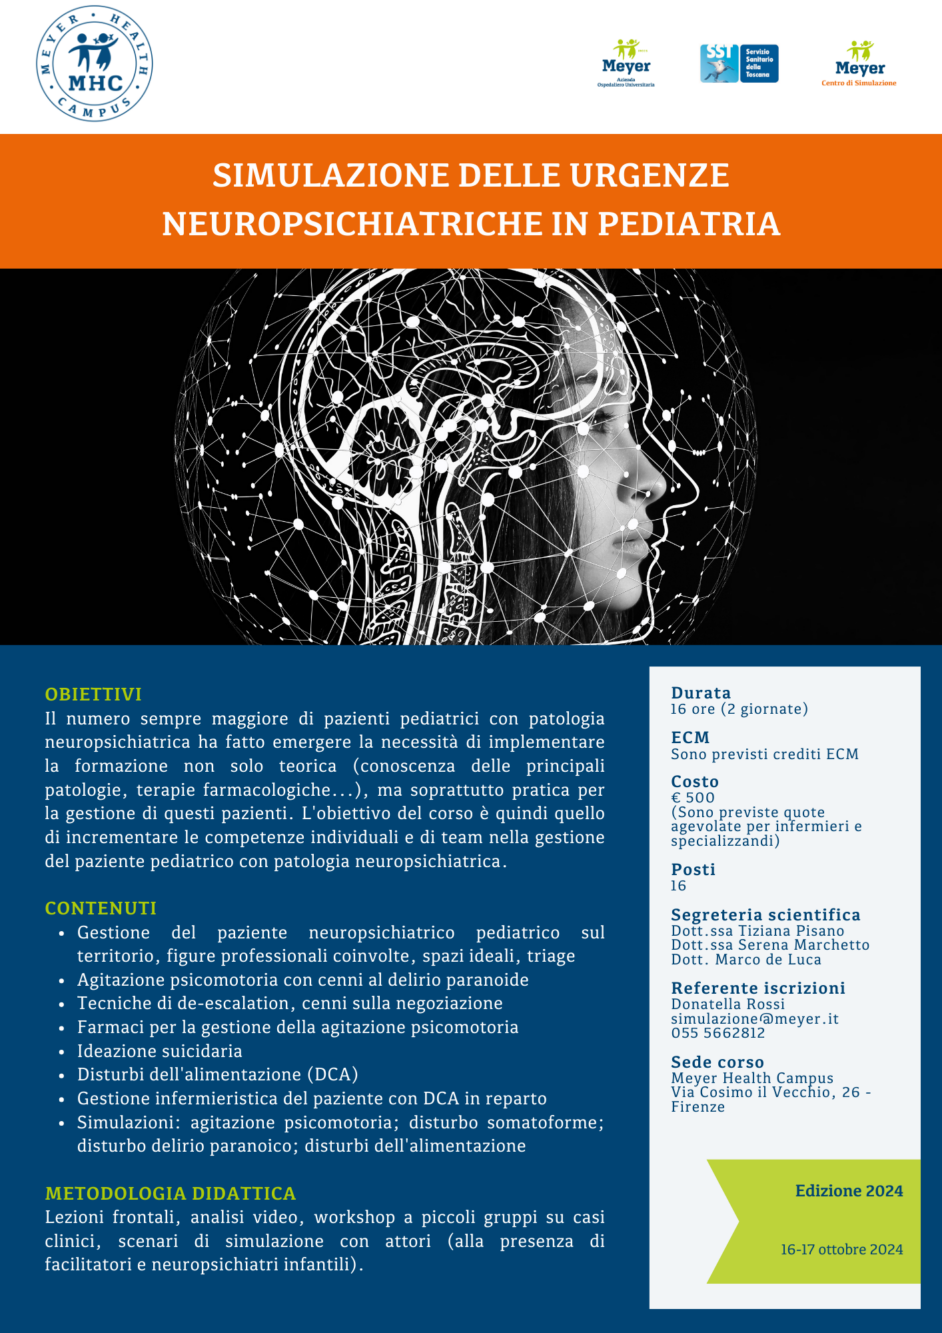 Simulazione delle urgenze neuropsichiatriche in pediatria (16-17 ottobre 2024)